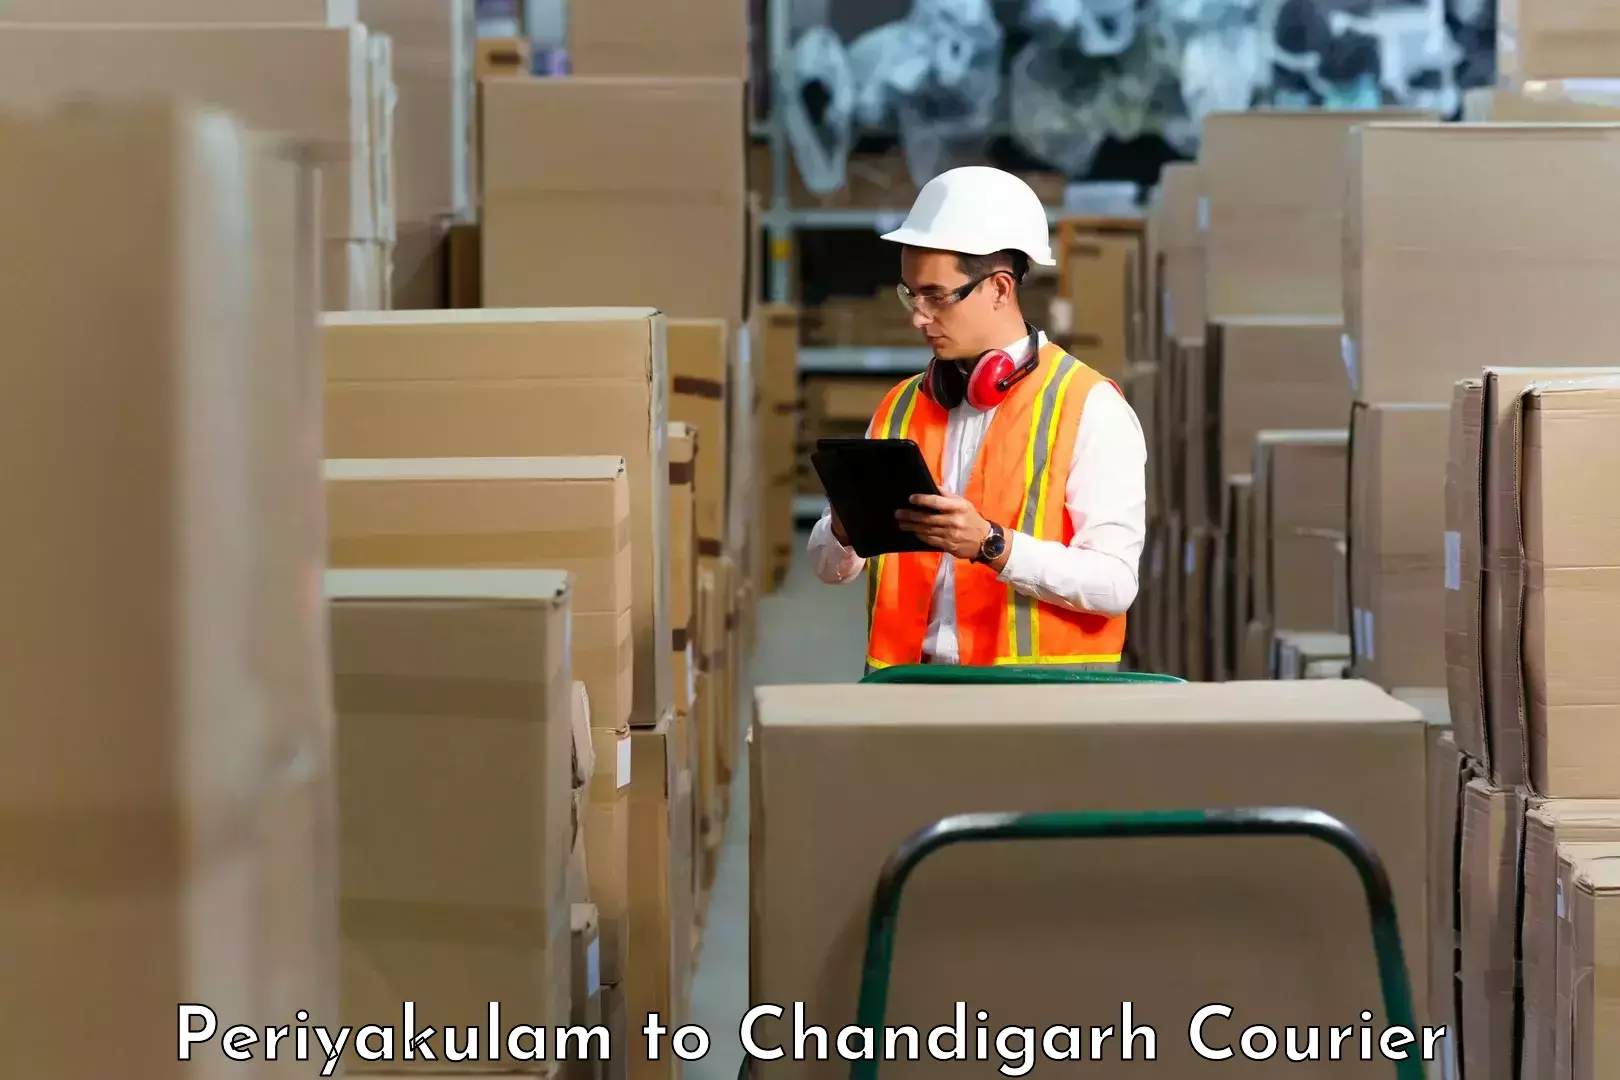 Courier service partnerships Periyakulam to Chandigarh